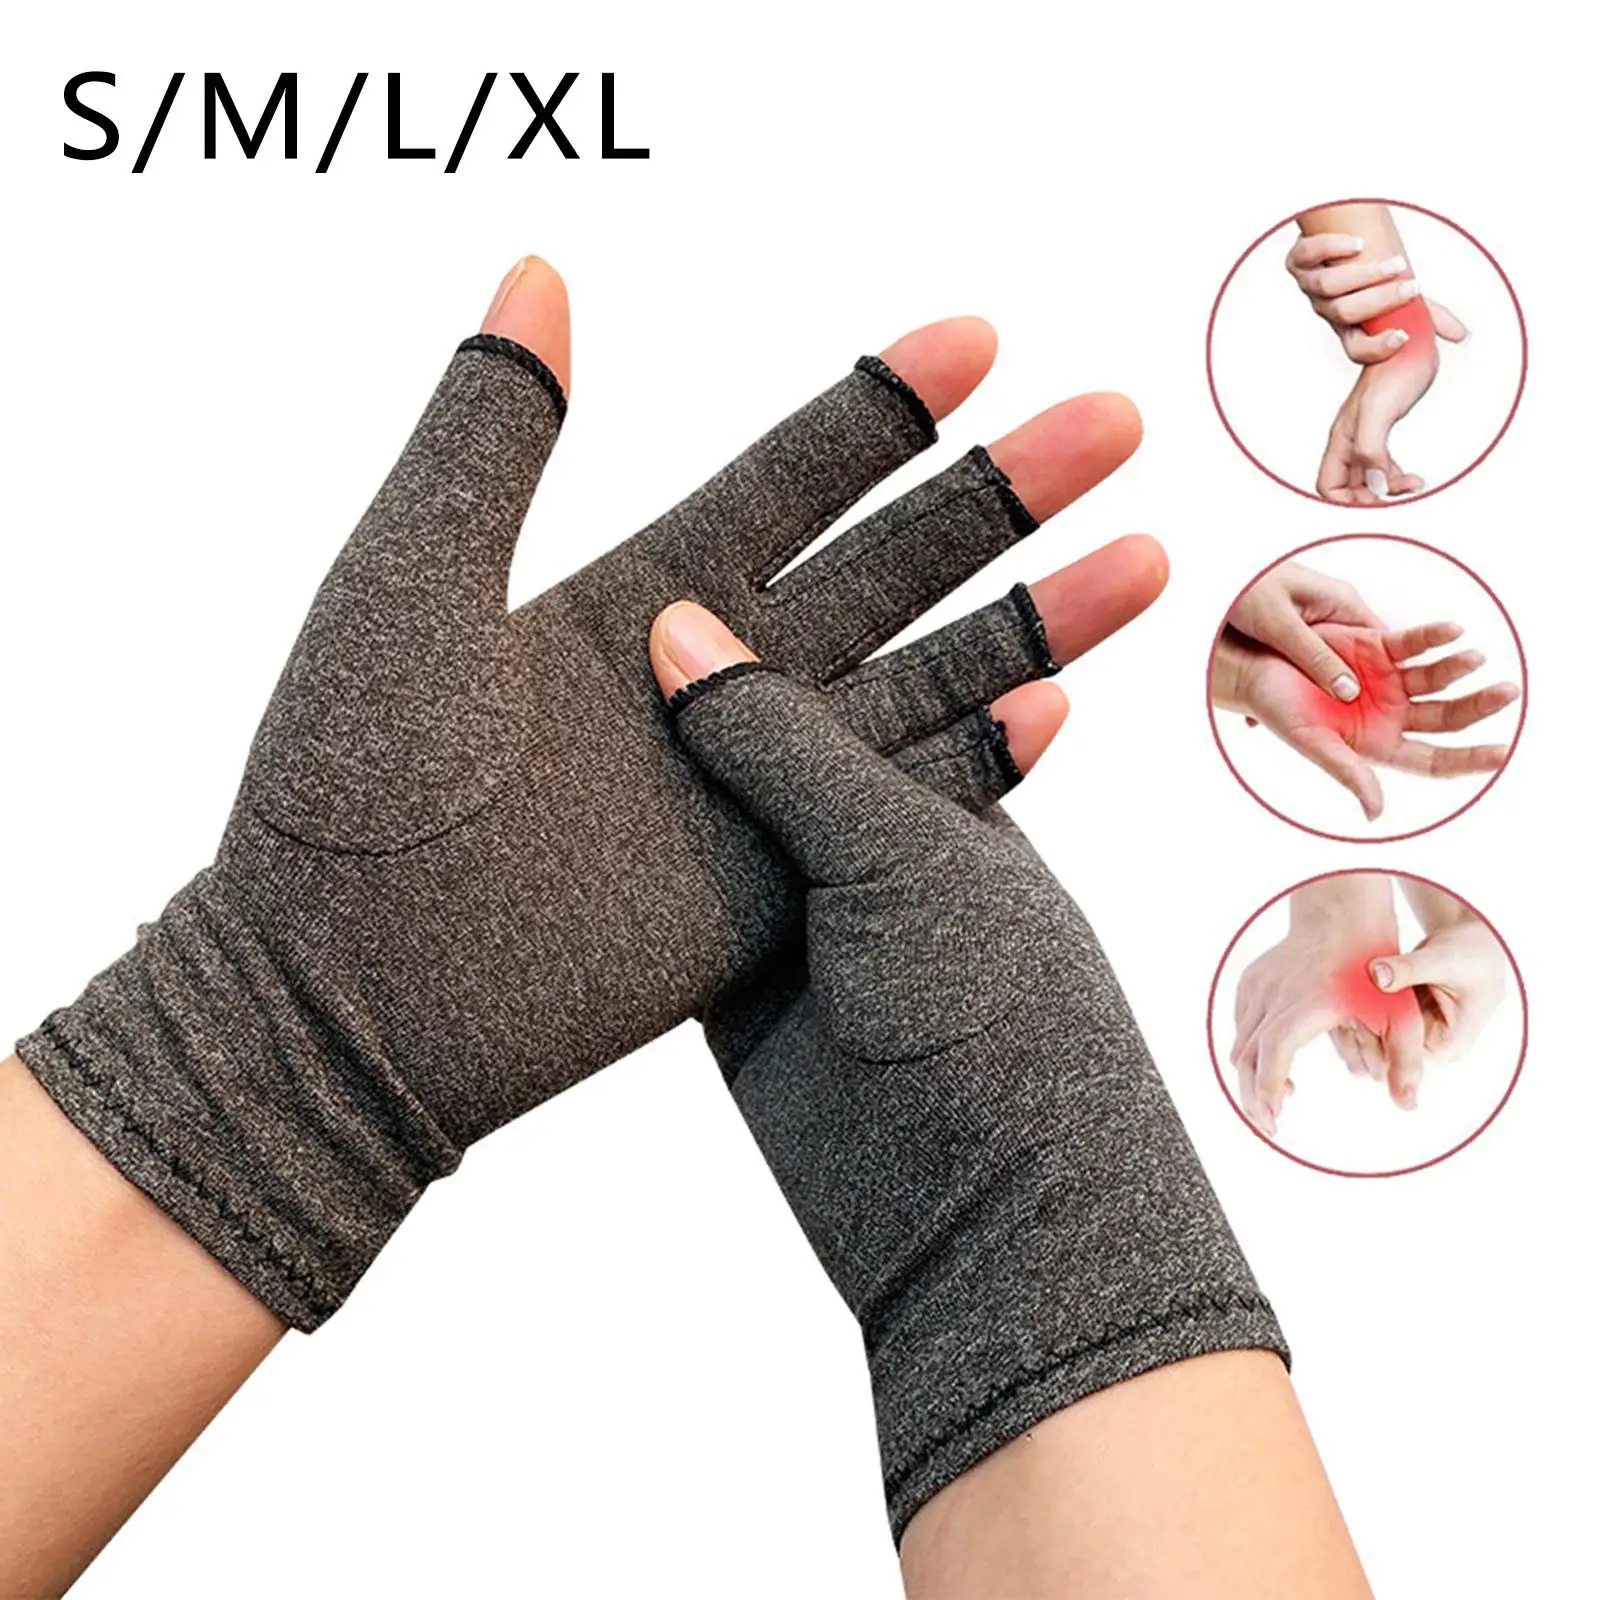 Fingerless Arthritis Compression Gloves Arthritis Fingerless Gloves